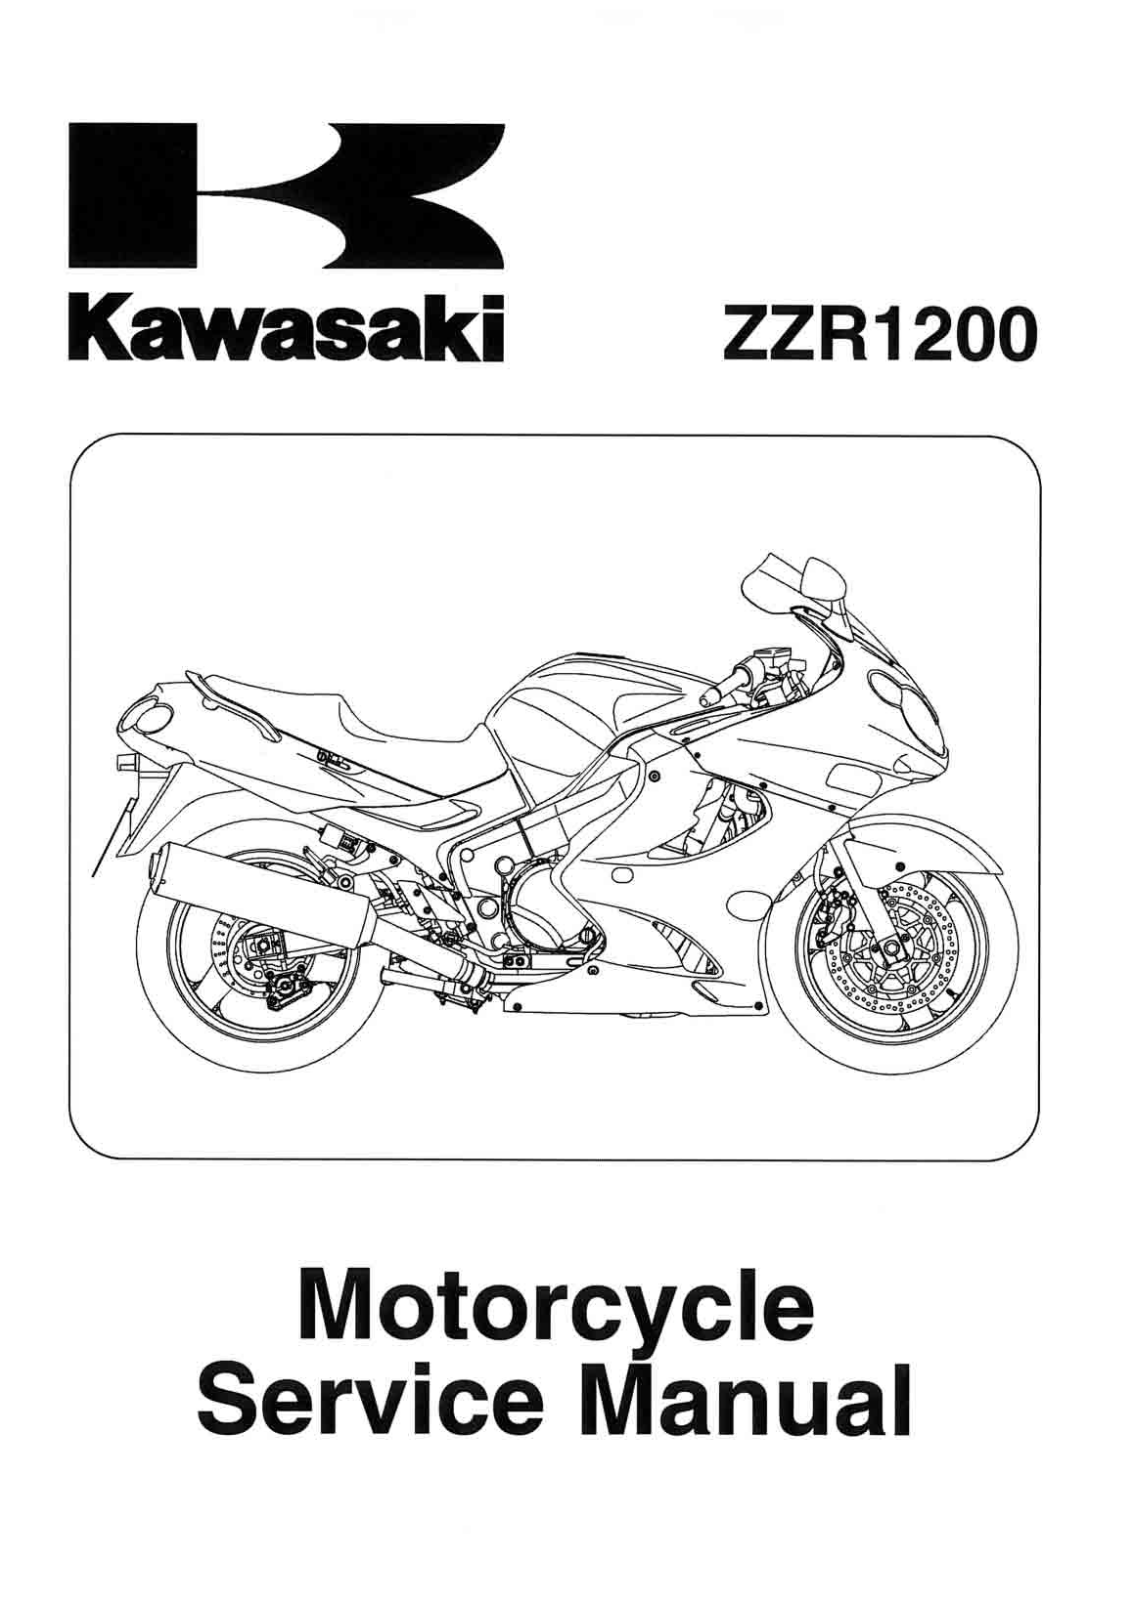 KAWASAKI ZZR1200 2002 - 2004 SERVICE MANUAL